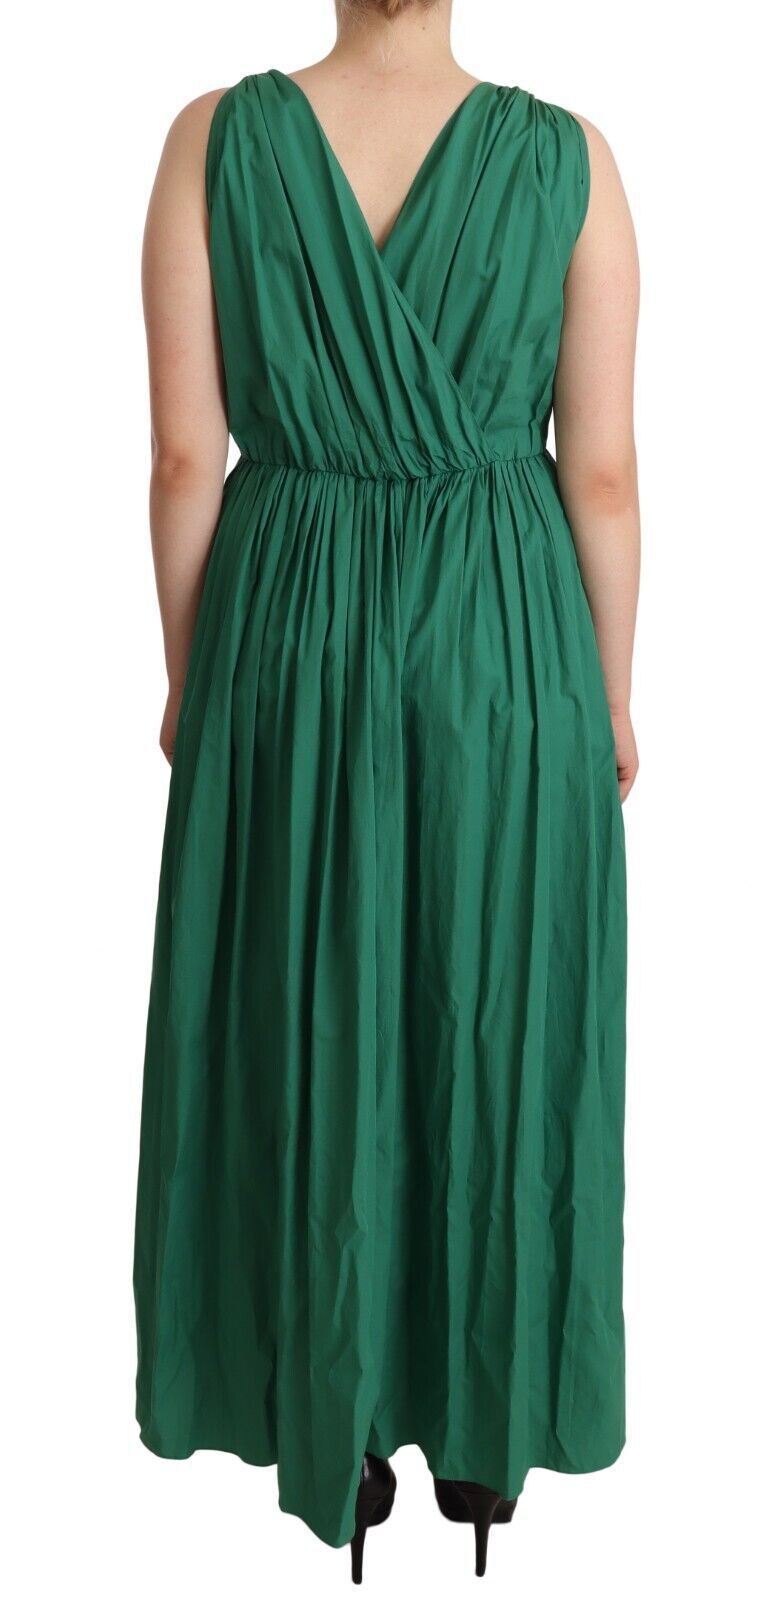 Elegant Deep Green Sleeveless A-Line Dress